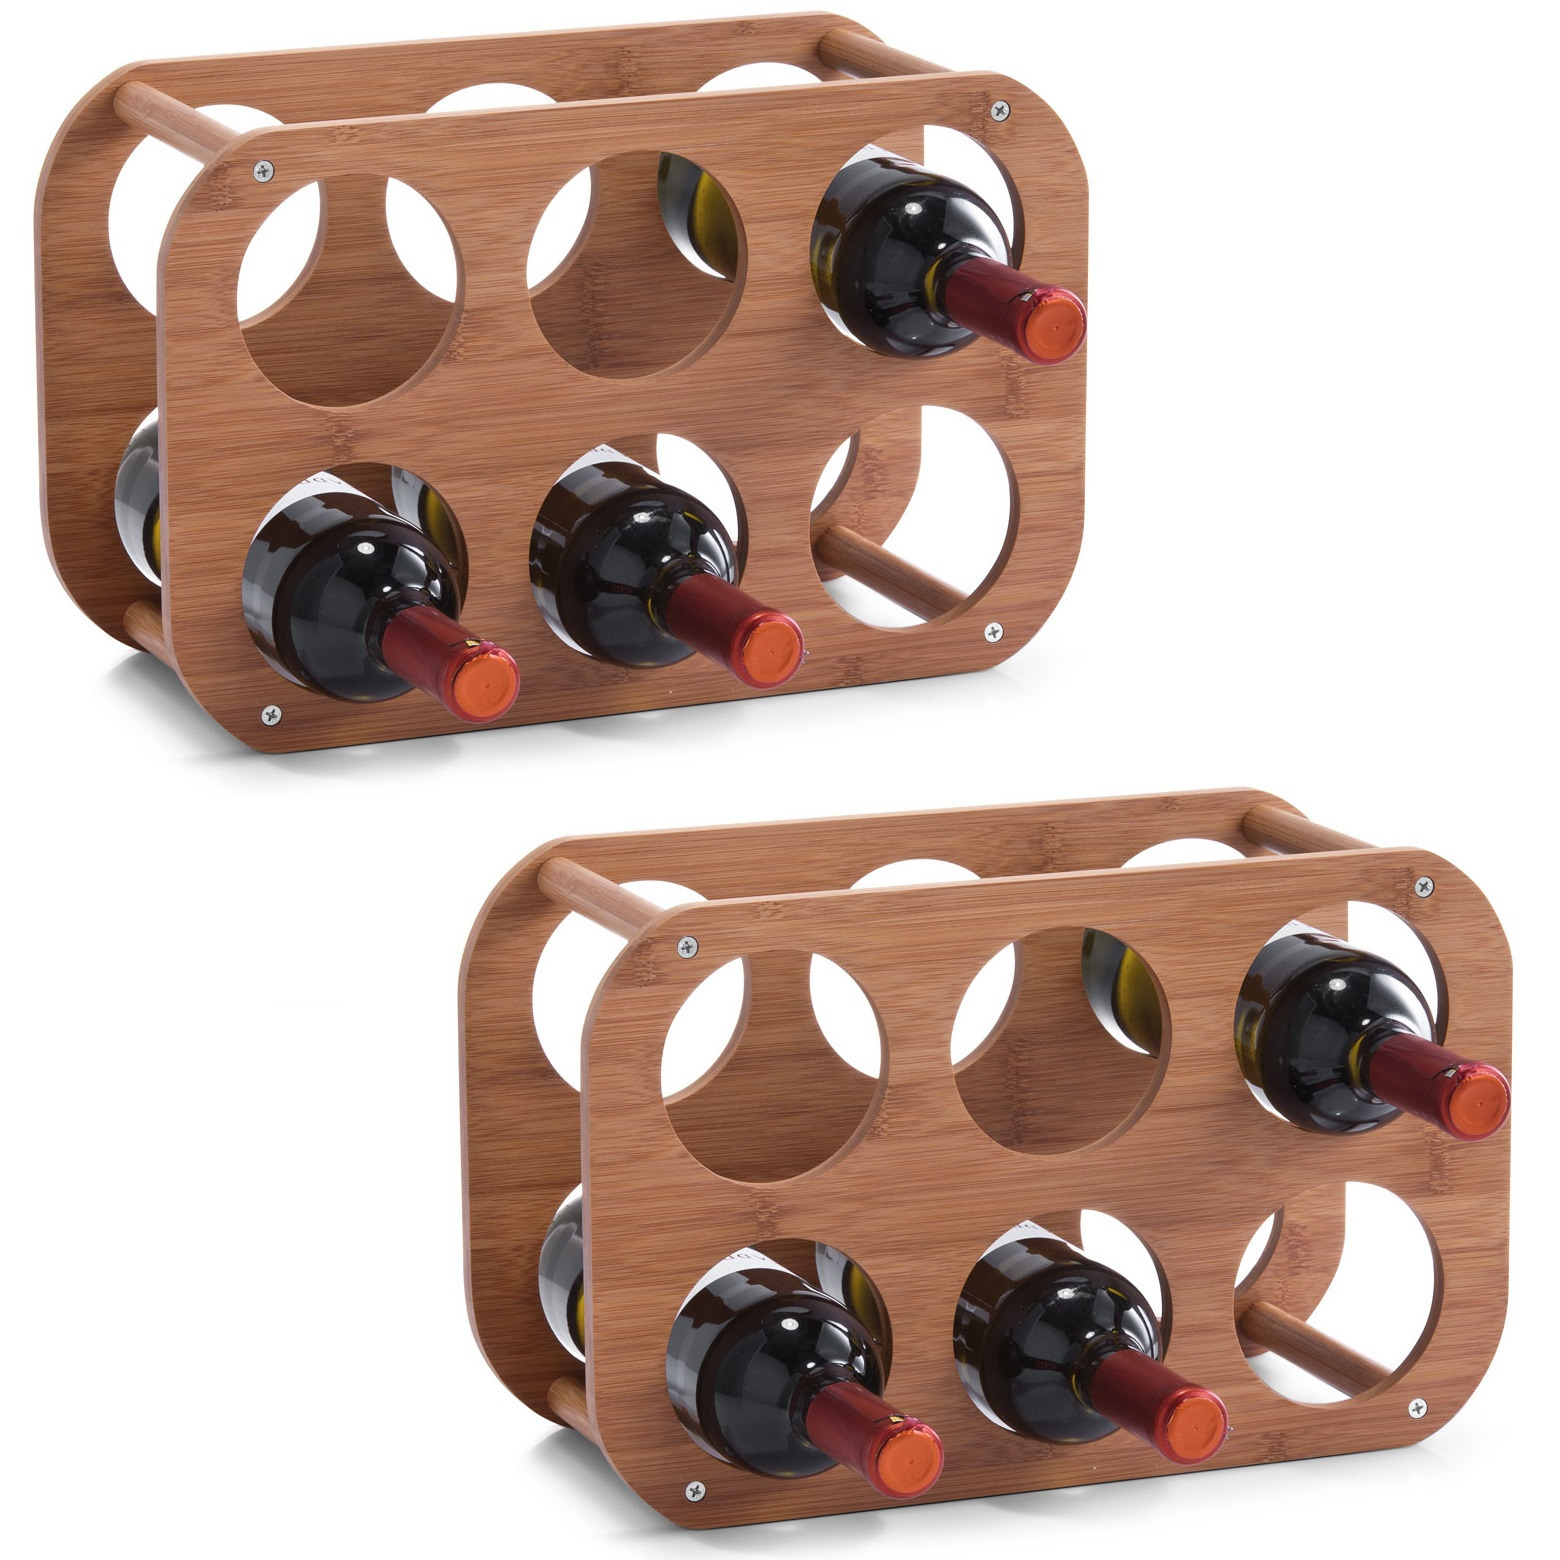 2x Houten wijnflesrek-wijnrekken compact voor 6 flessen 38 cm